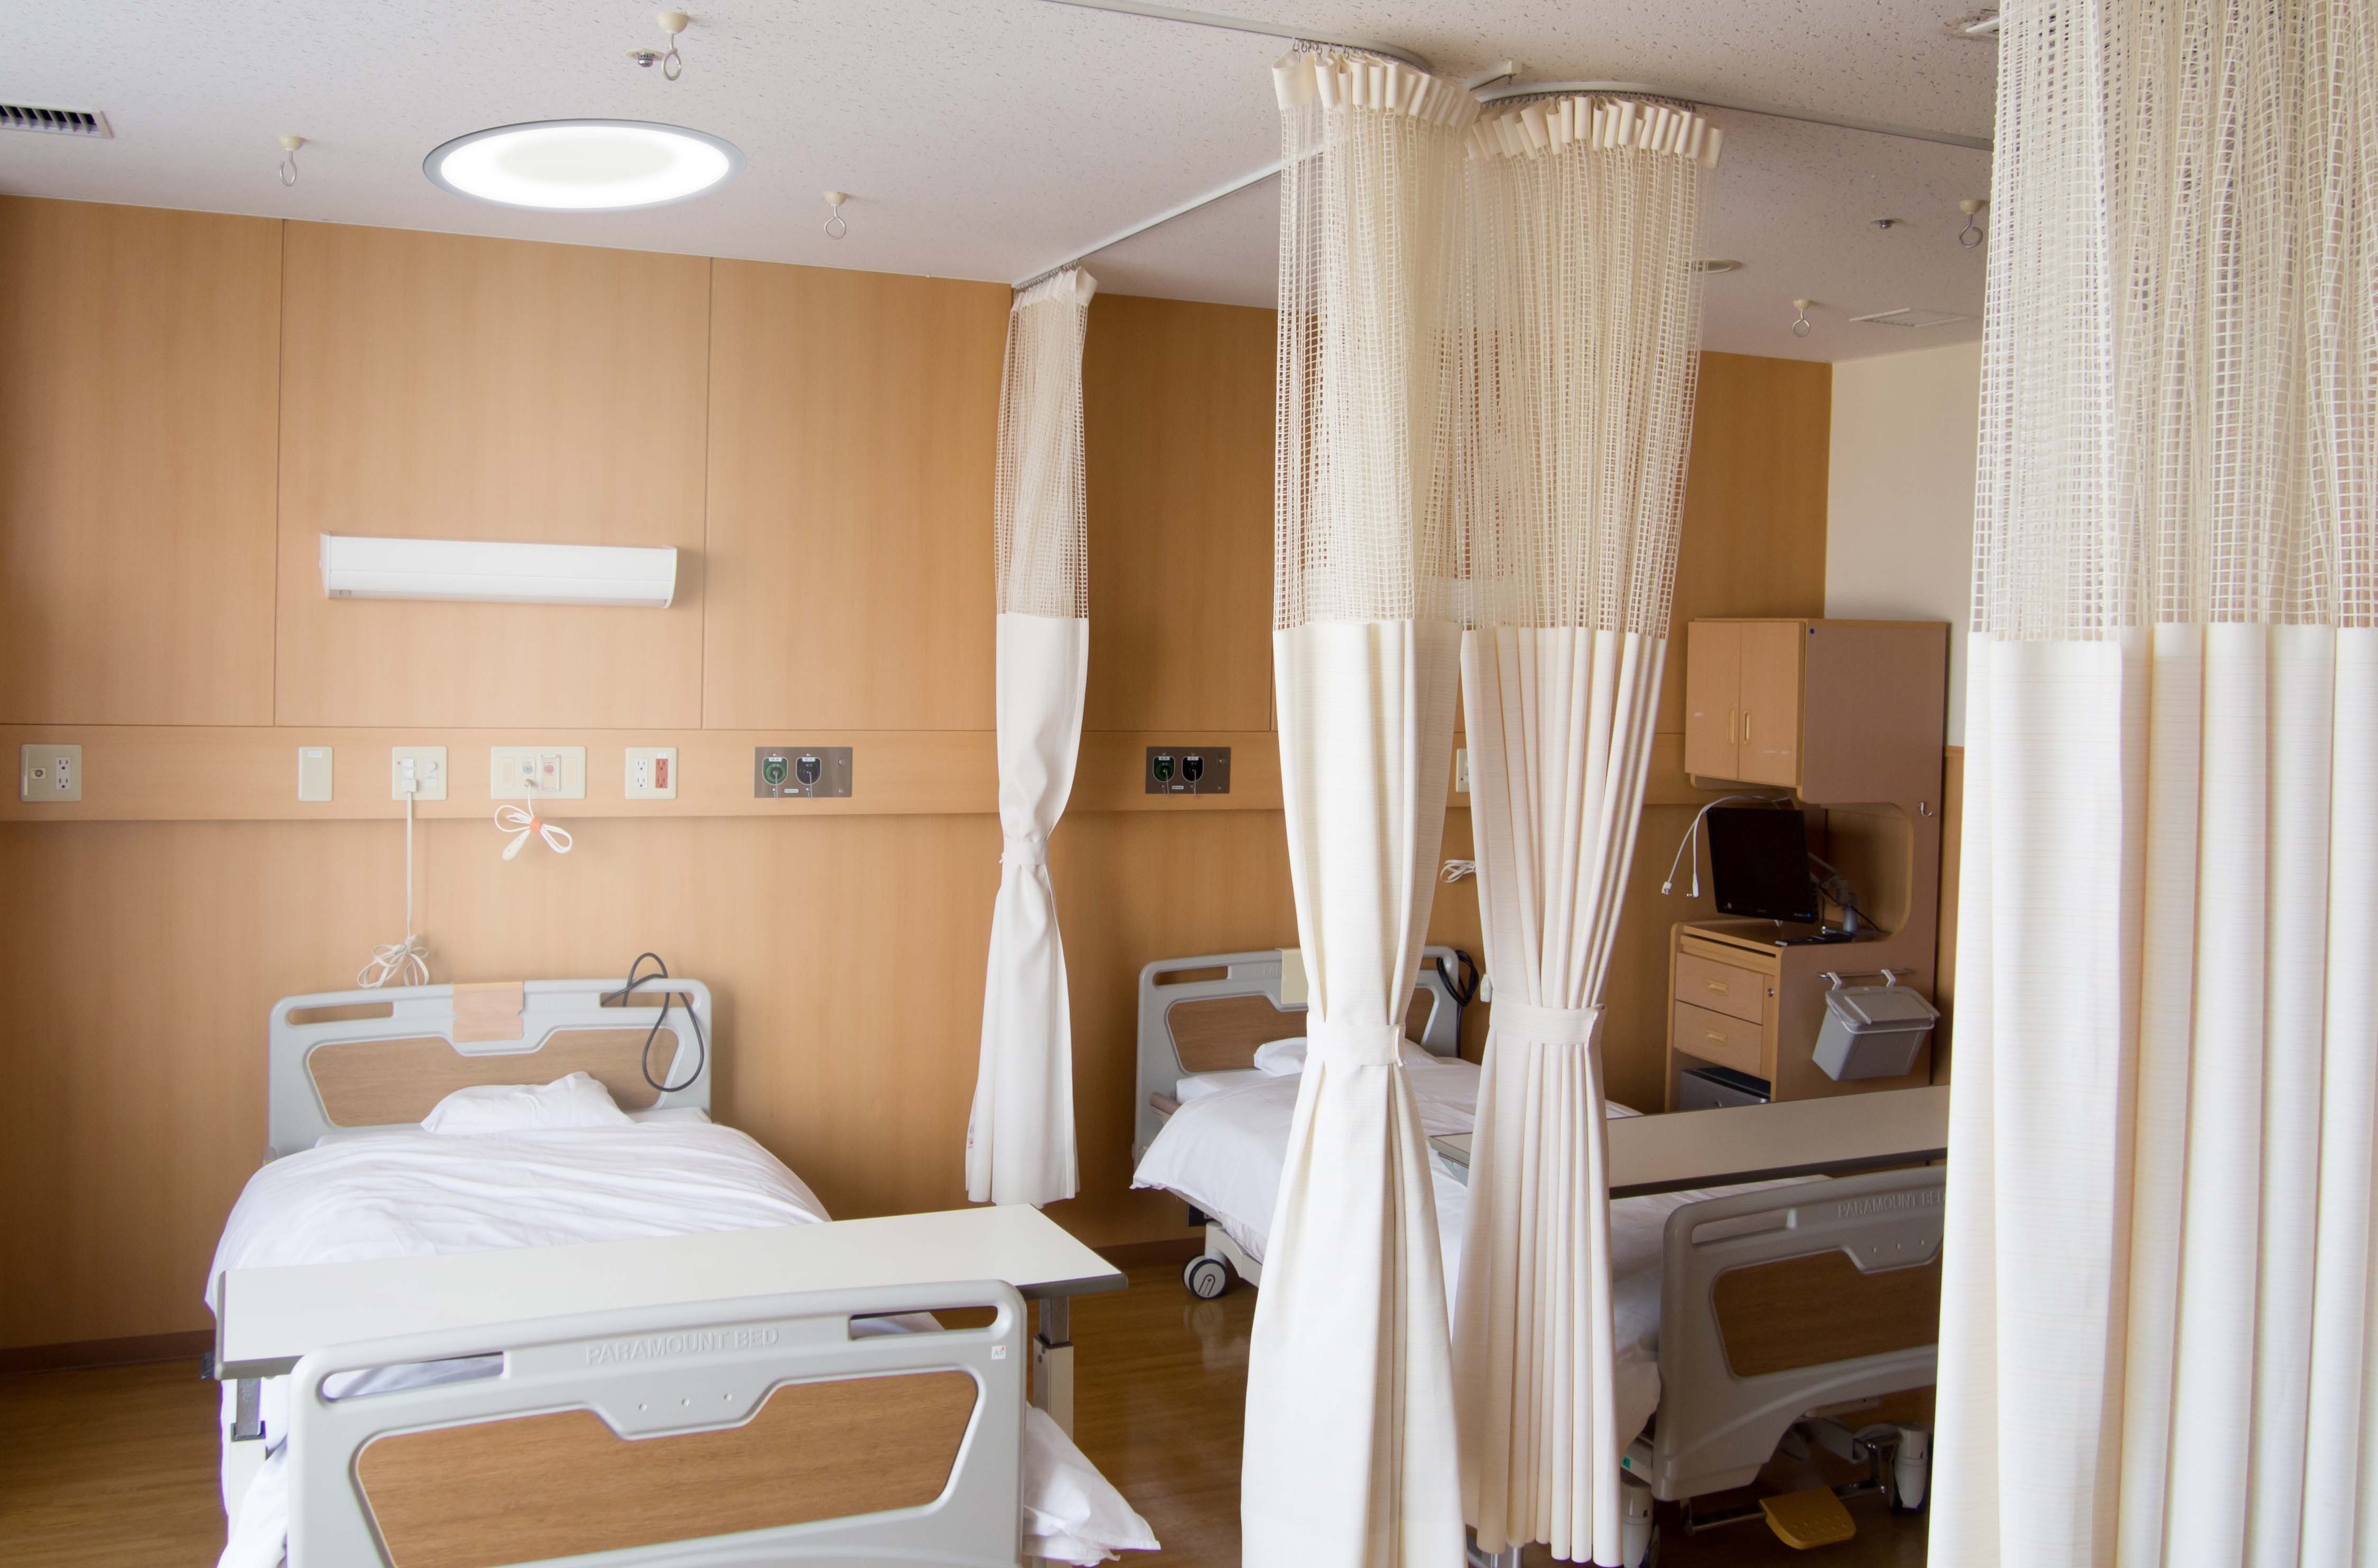 Symmetry patient room lighting fixture over a patient bed